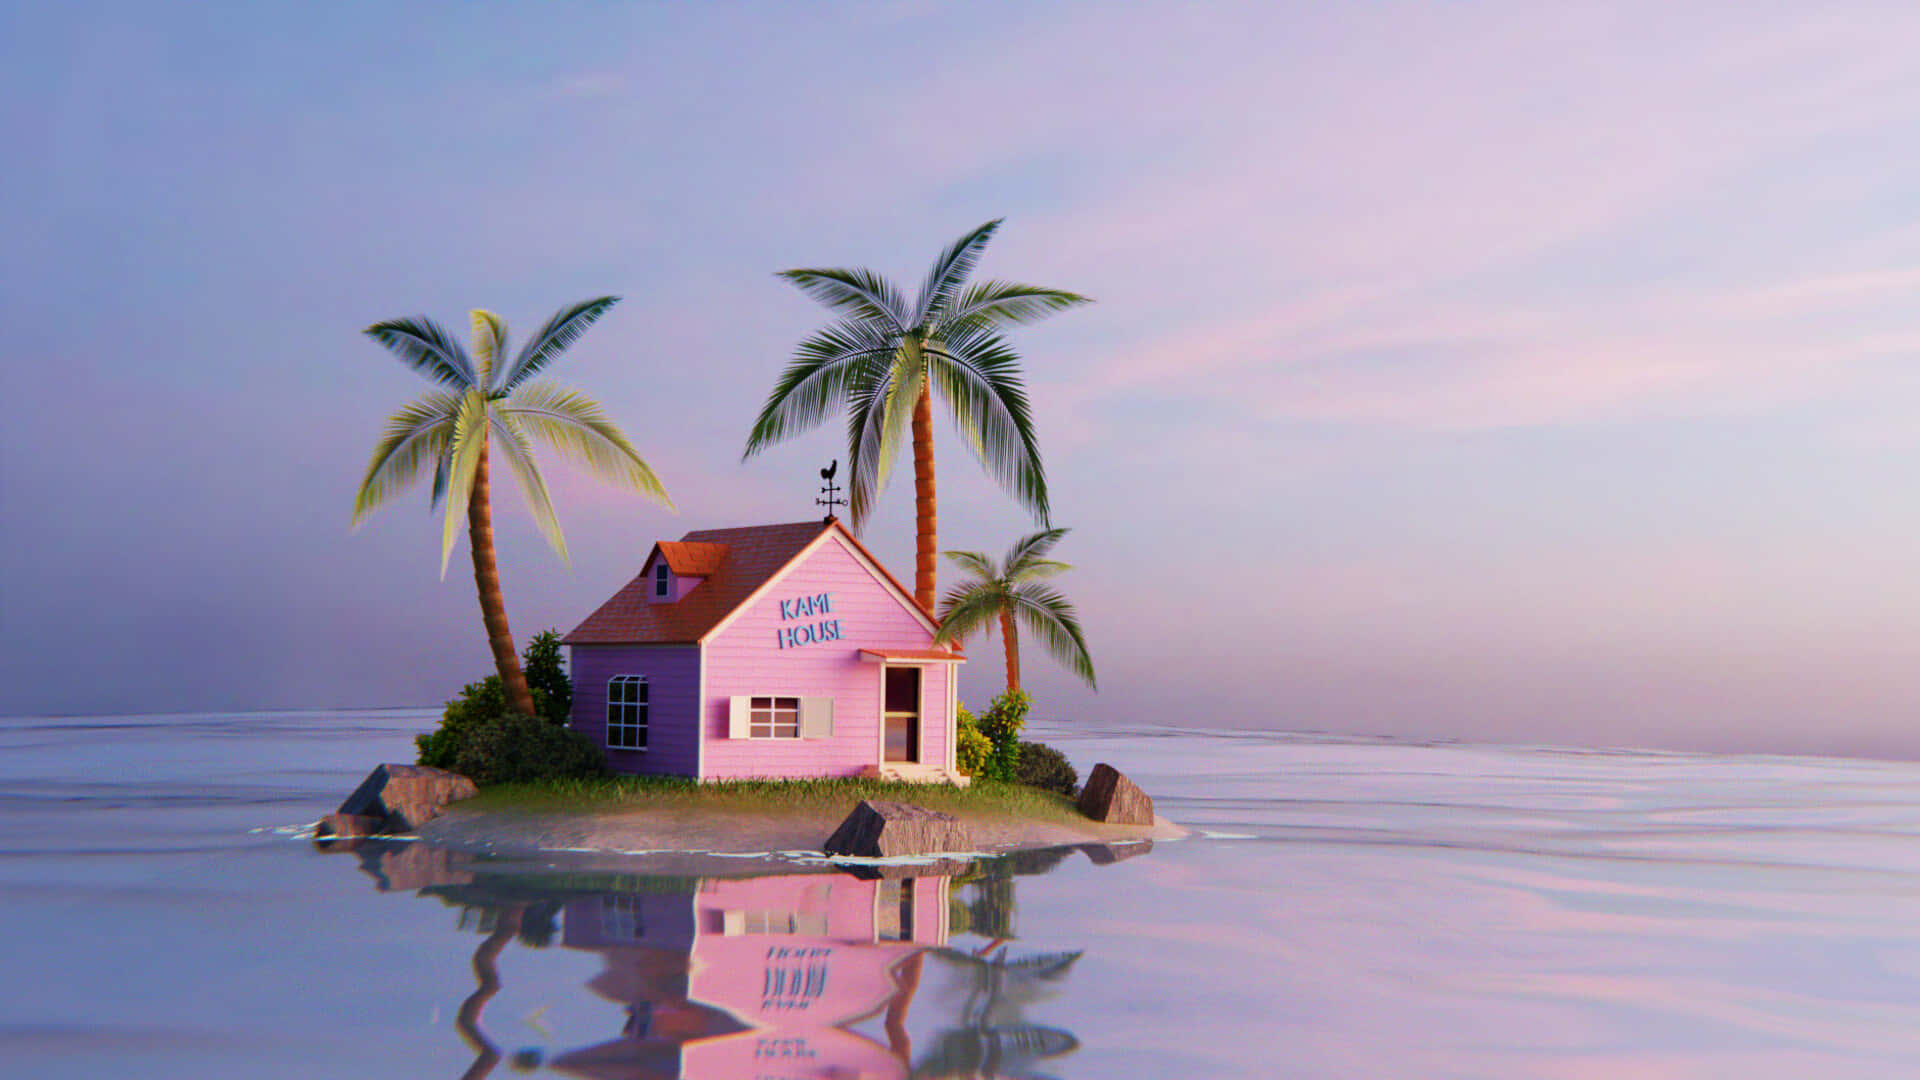 Einrosa Haus Auf Einer Insel Mit Palmen Wallpaper